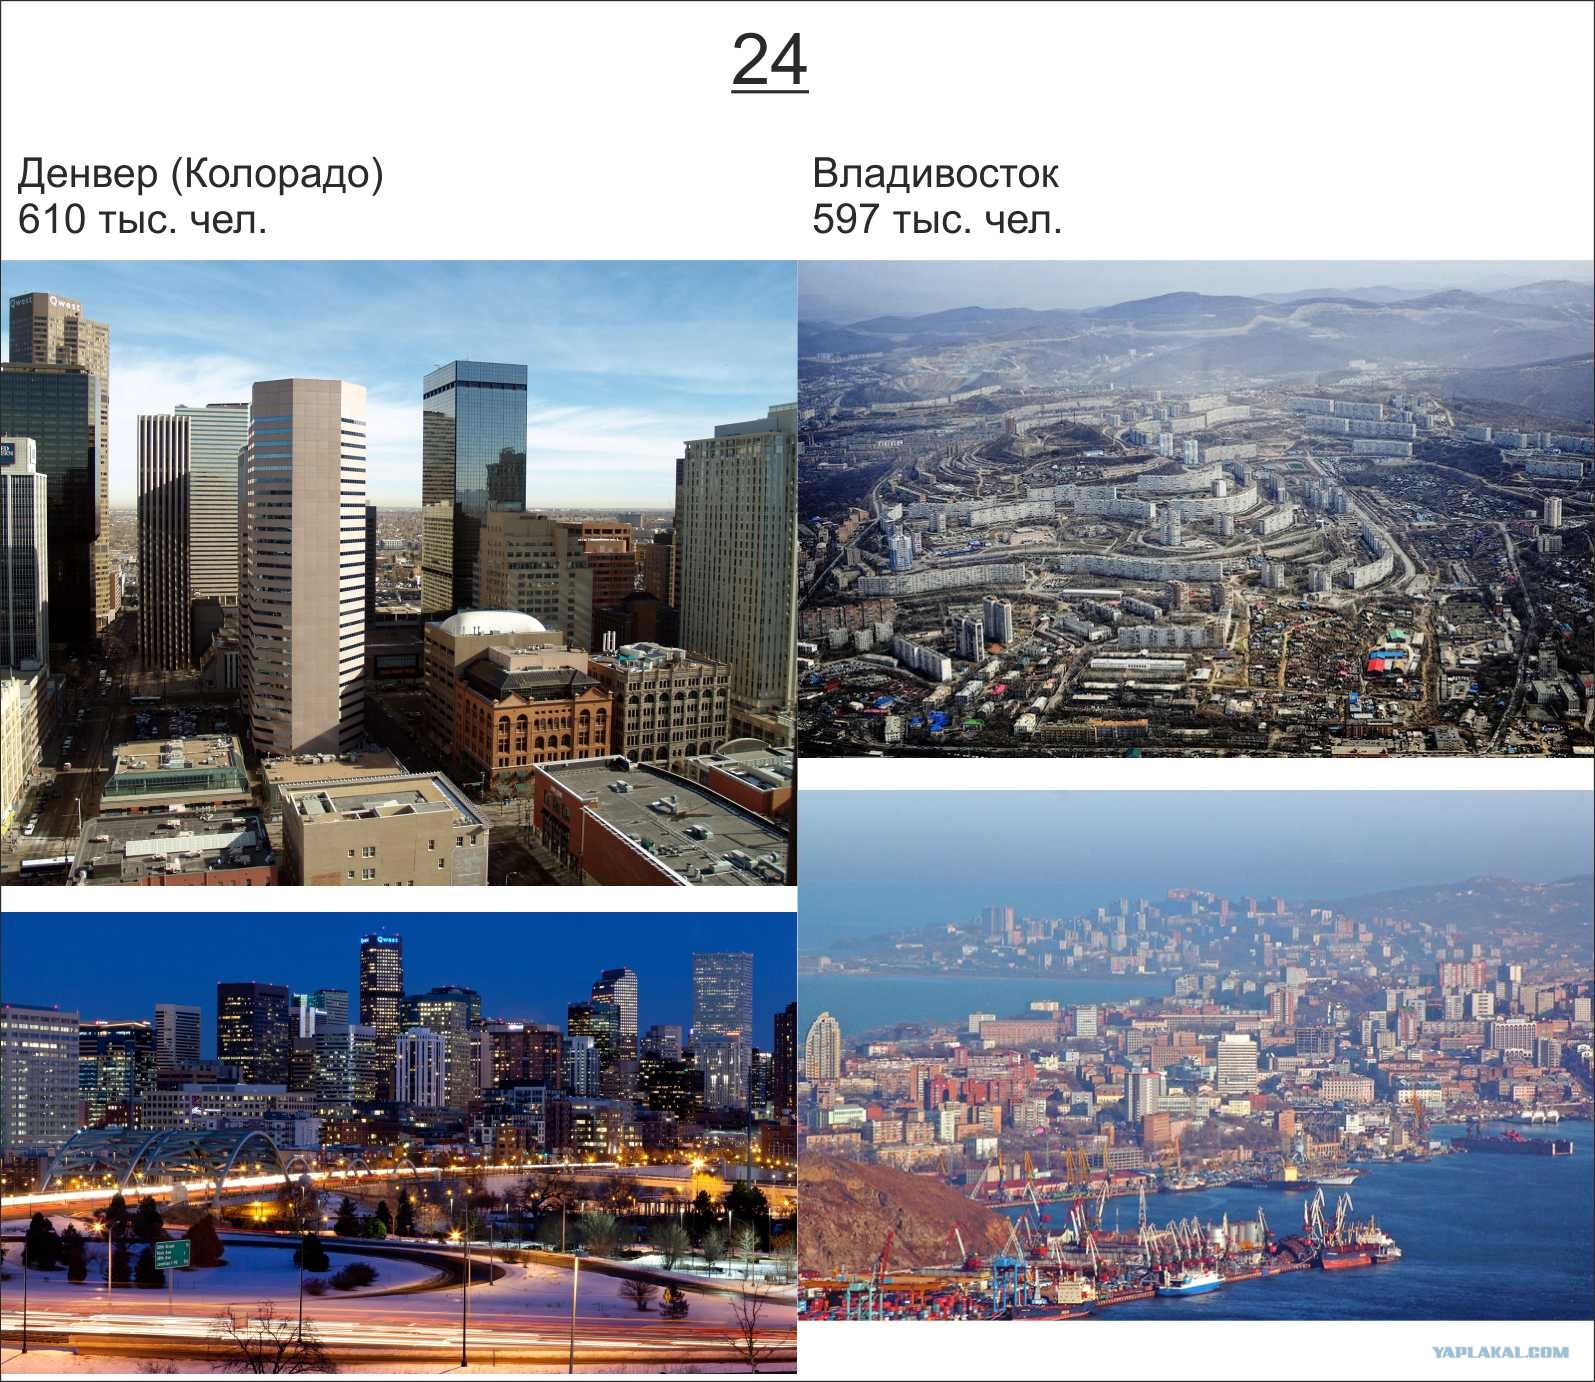 Какие вы знаете крупные города. Город Америка в России. Крупные города России фото. 5 Крупнейших городов России и США. Денвер Колорадо метрополитен.